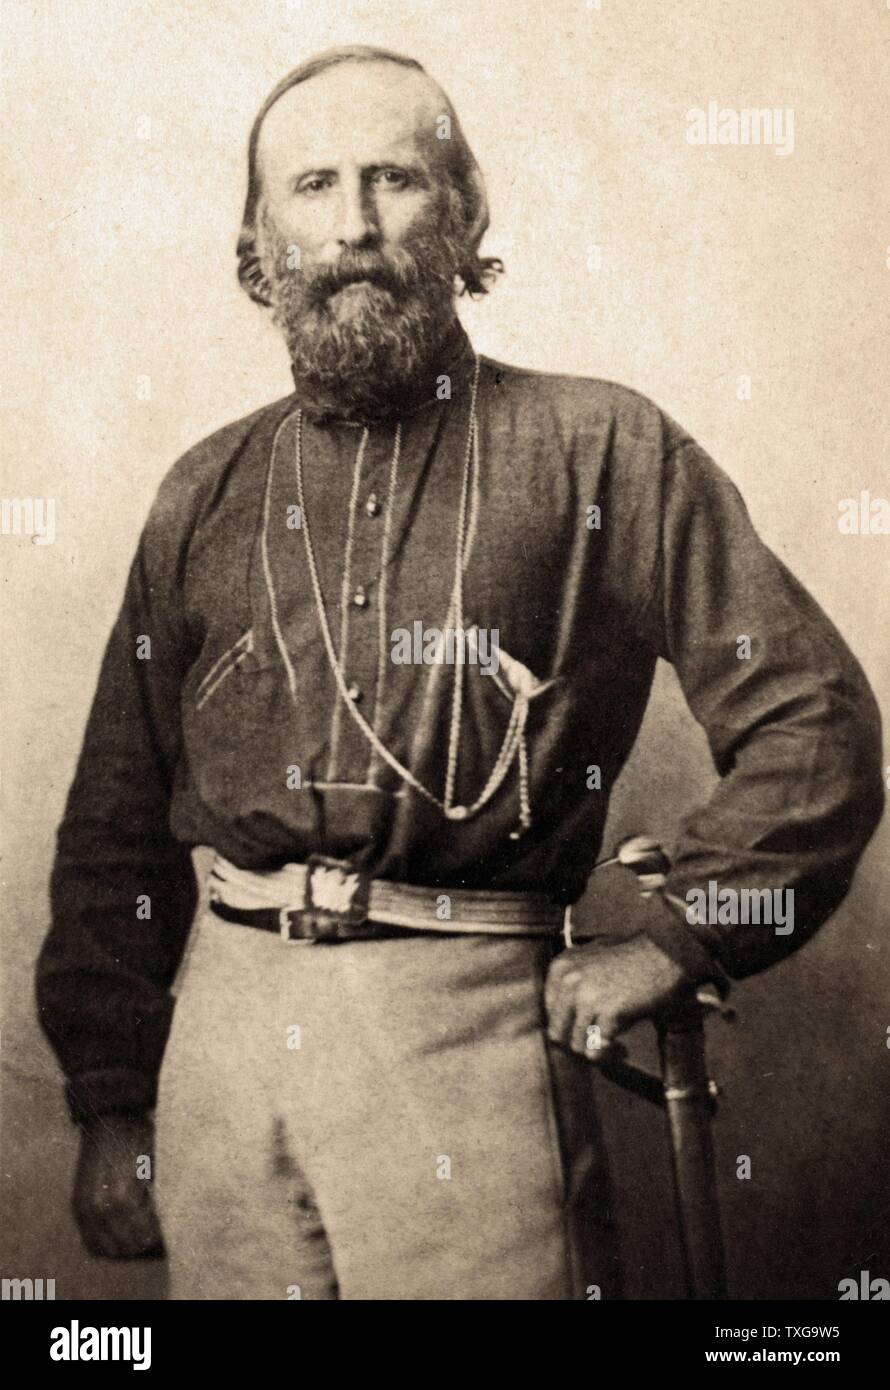 Giuseppe Garibaldi à Naples, Italie -1861. Soldat italien, homme politique et nationaliste. Portrait de trois-quarts debout face à face. Banque D'Images